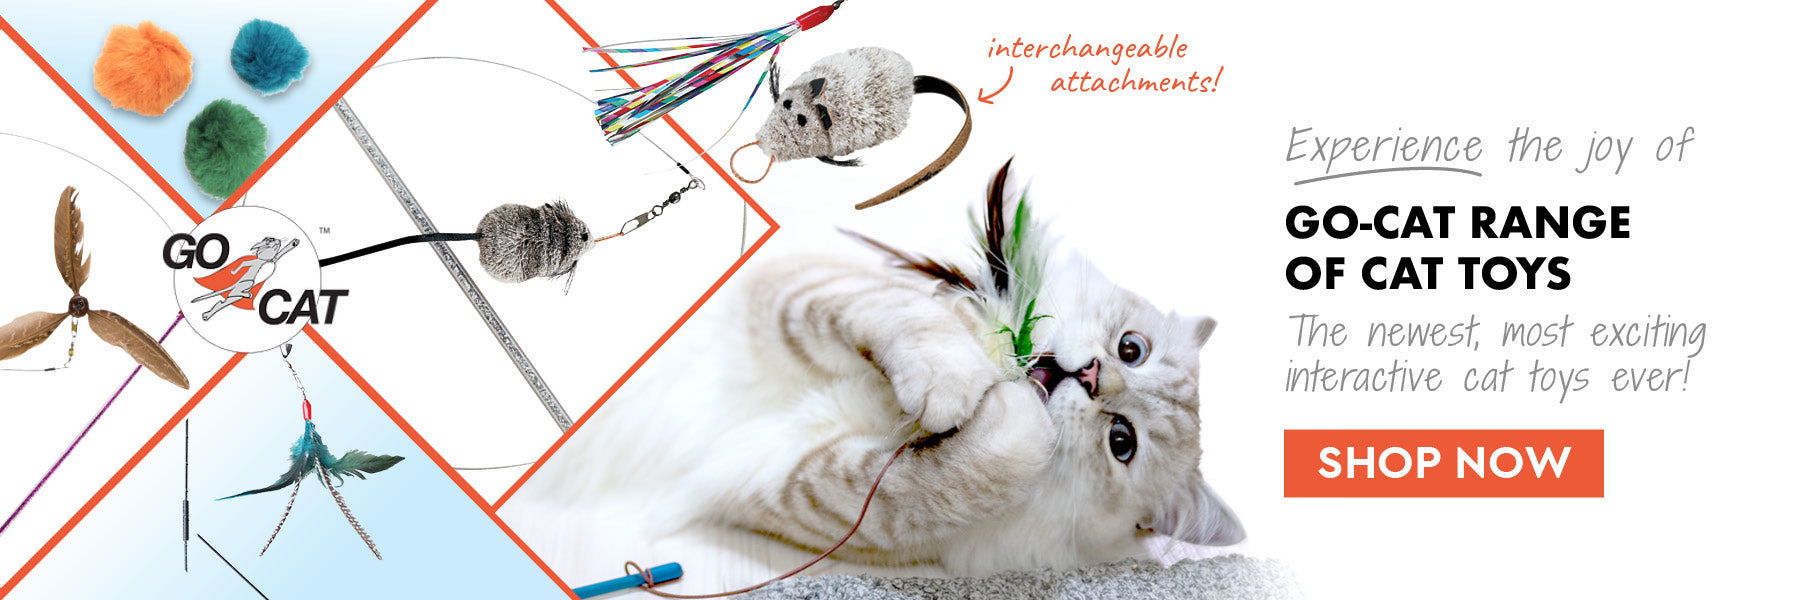 Go-Cat Interactive Cat Toys